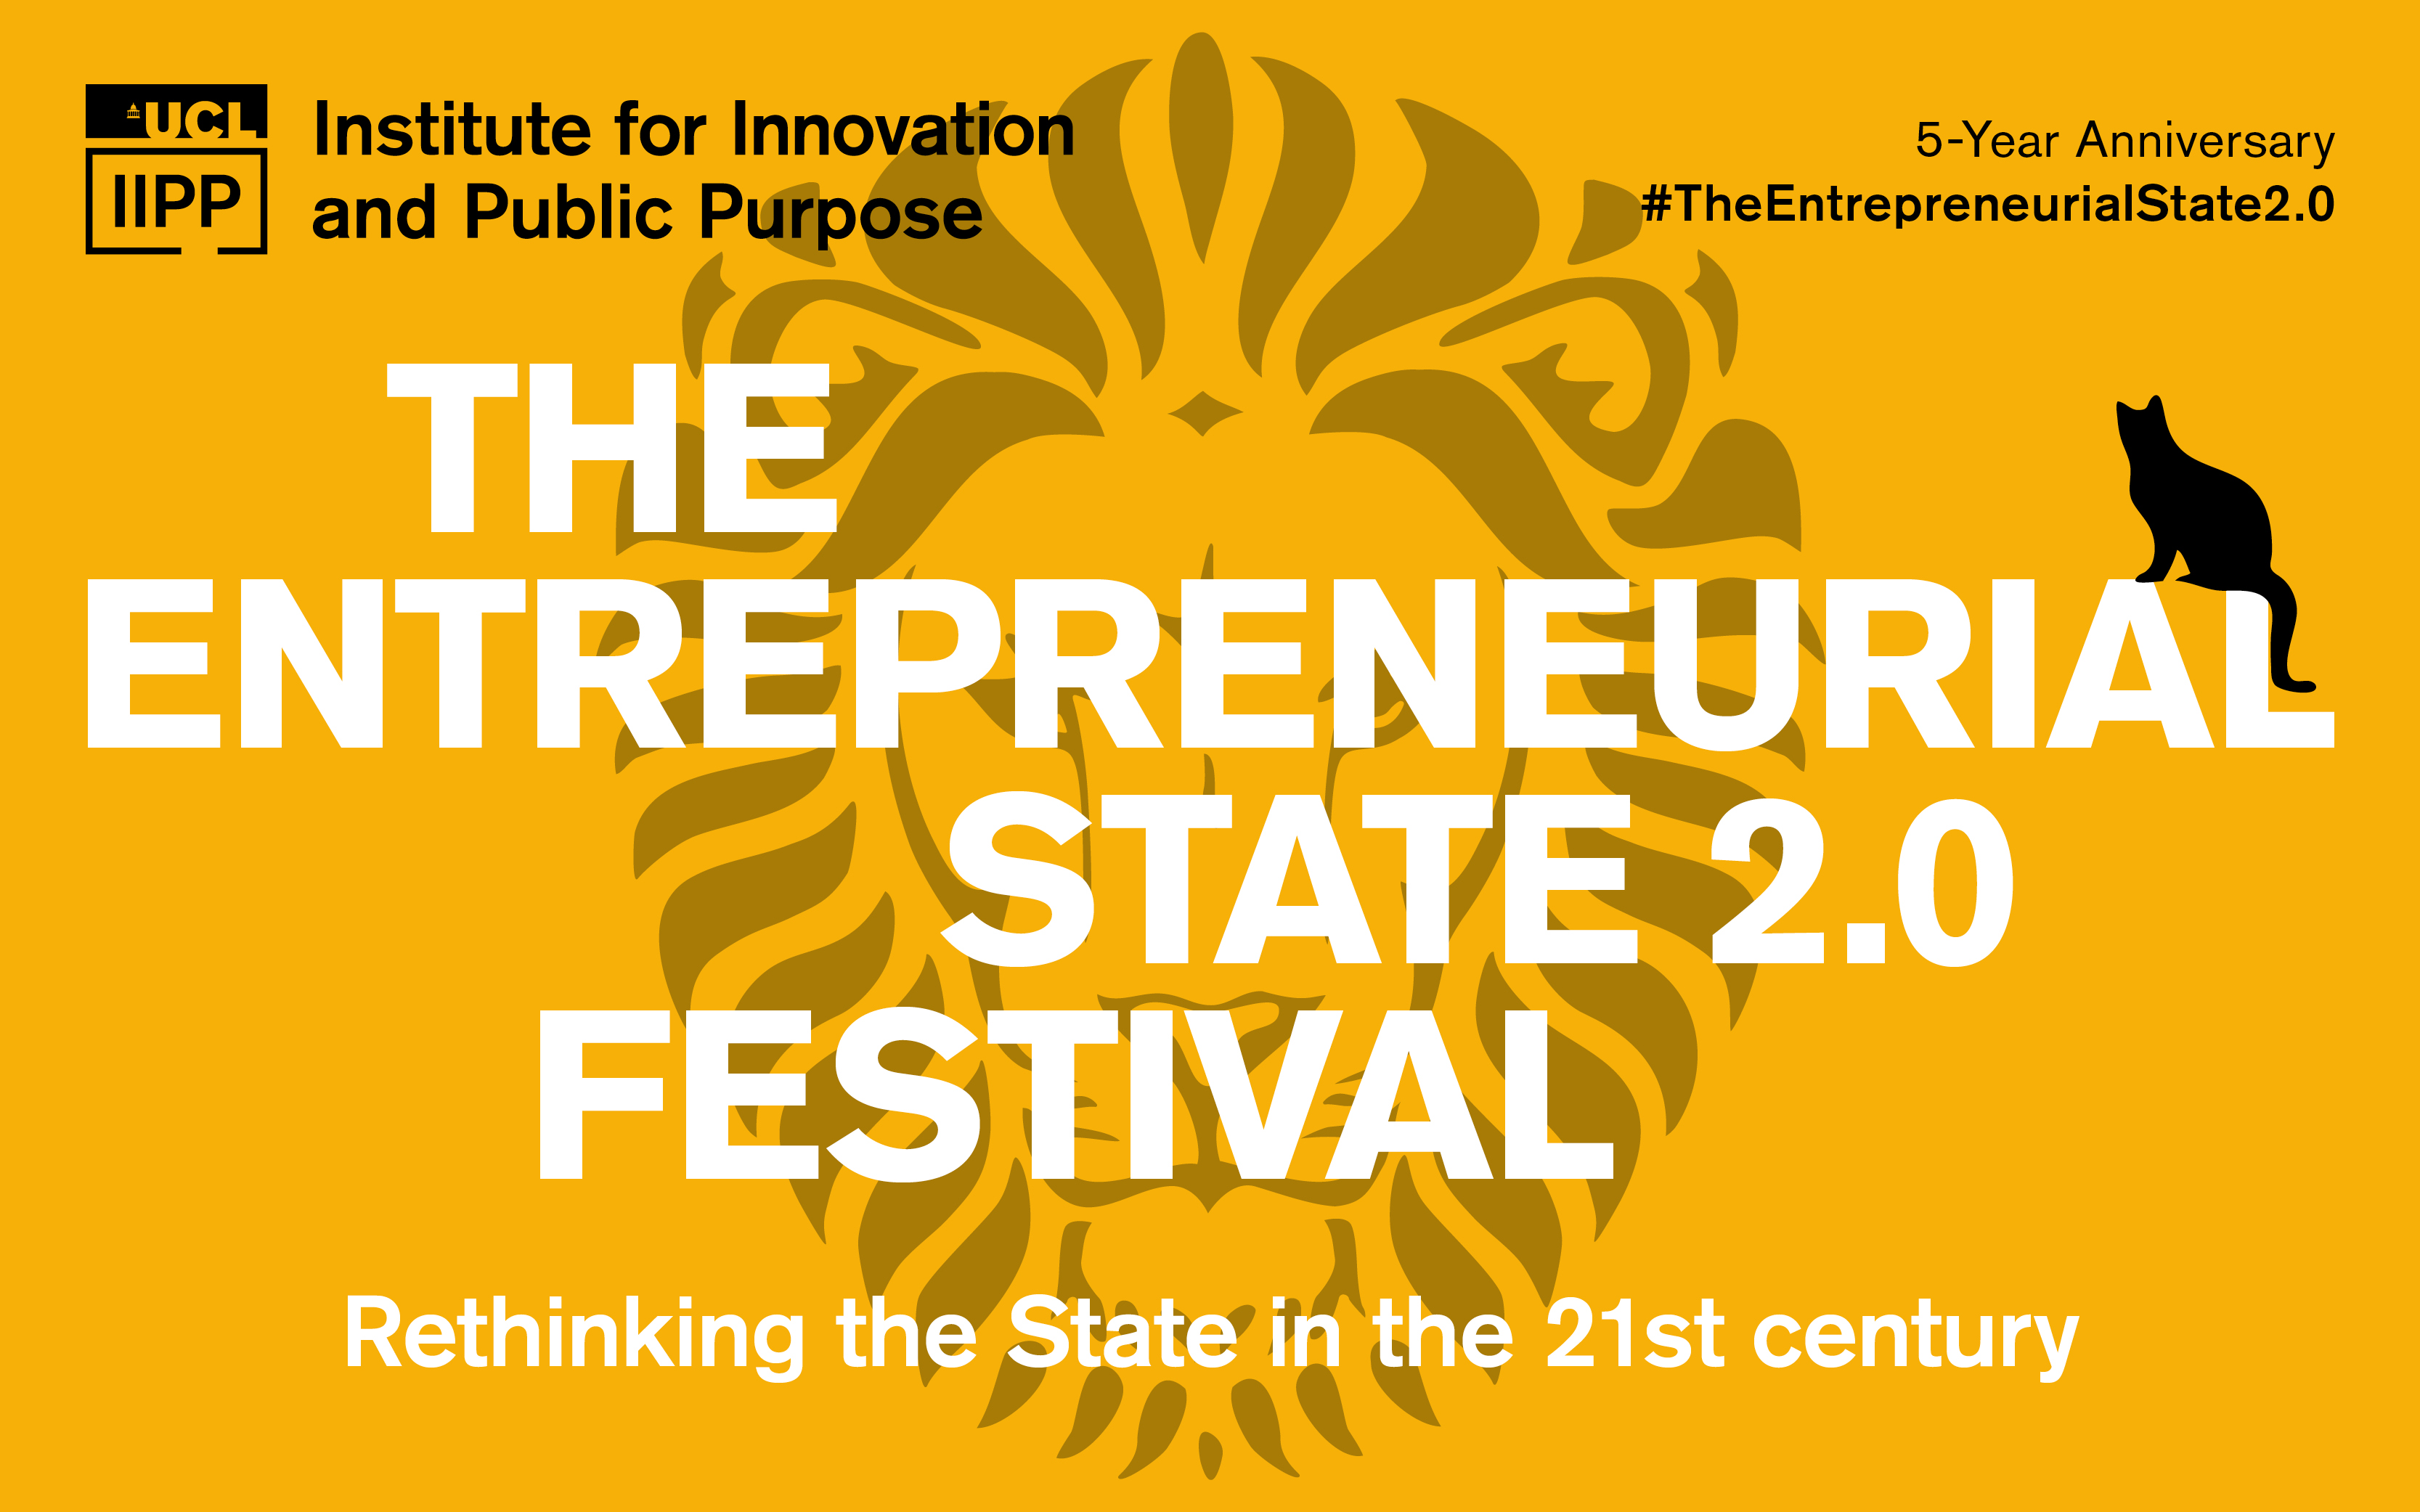 The entrepreneurial state 2.0 Festival